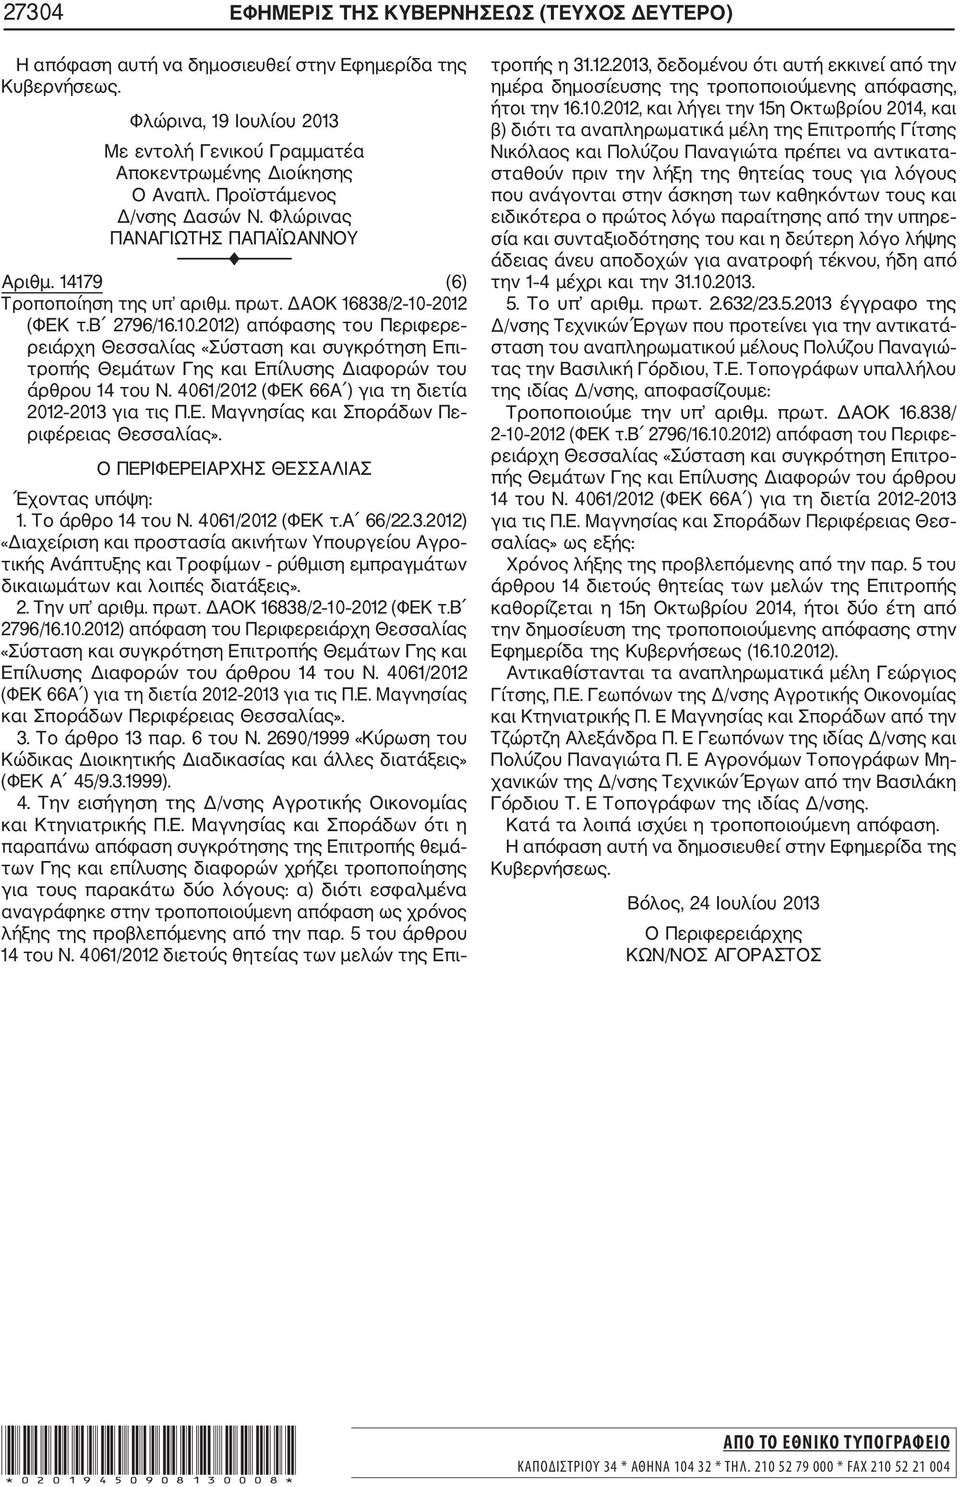 2012 (ΦΕΚ τ.β 2796/16.10.2012) απόφασης του Περιφερε ρειάρχη Θεσσαλίας «Σύσταση και συγκρότηση Επι τροπής Θεμάτων Γης και Επίλυσης Διαφορών του άρθρου 14 του Ν.